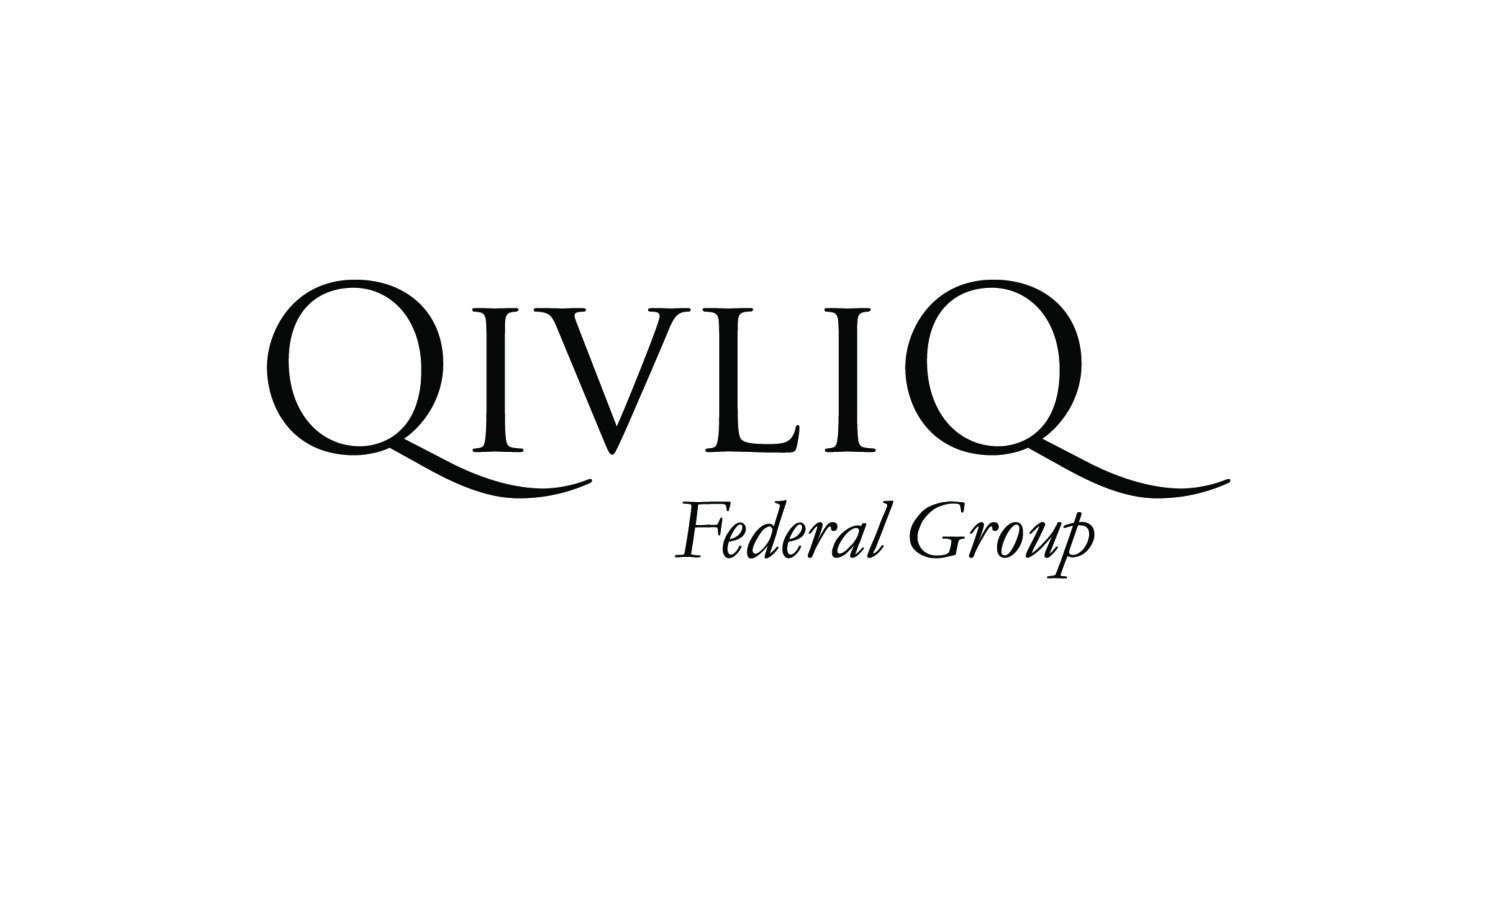 Qivliq Federal Group logo